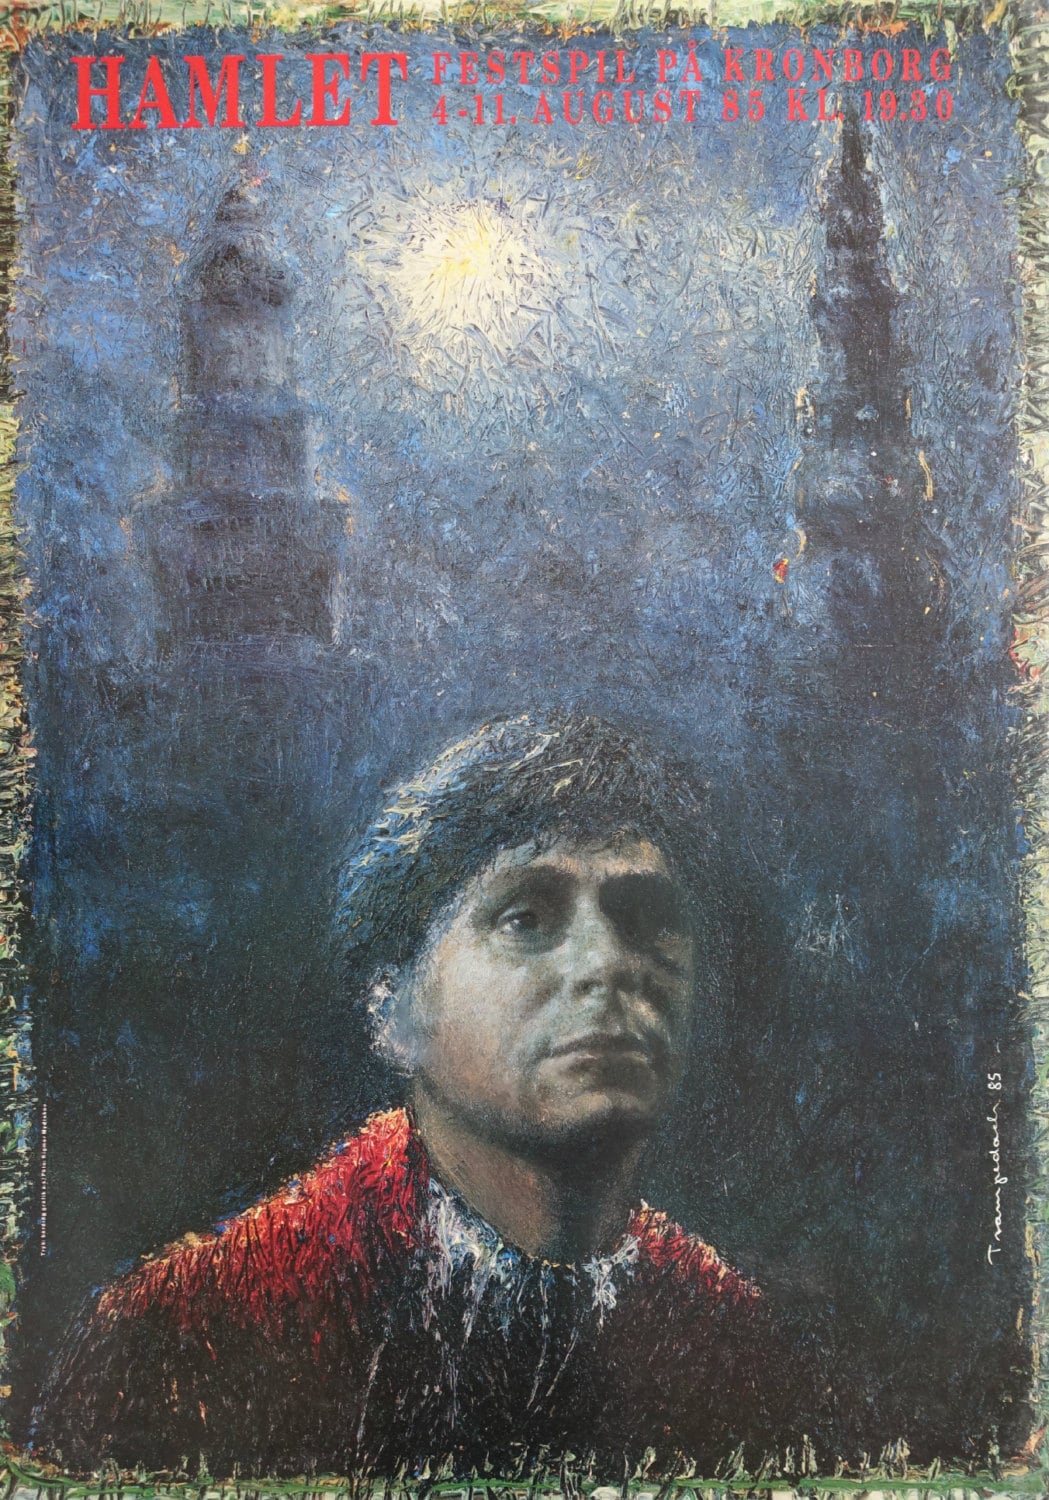 1985 Hamlet by Kurt Trampedach - Original Vintage Poster